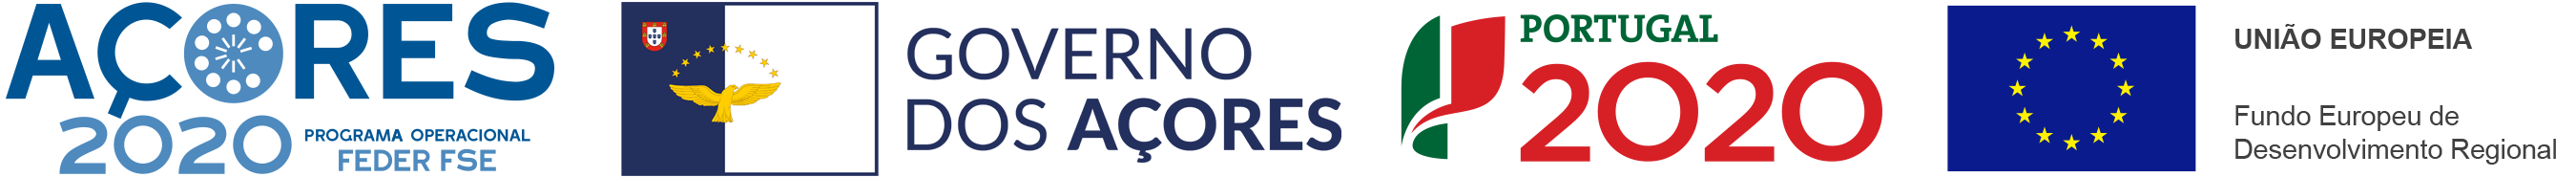 Açores 2020 Feder